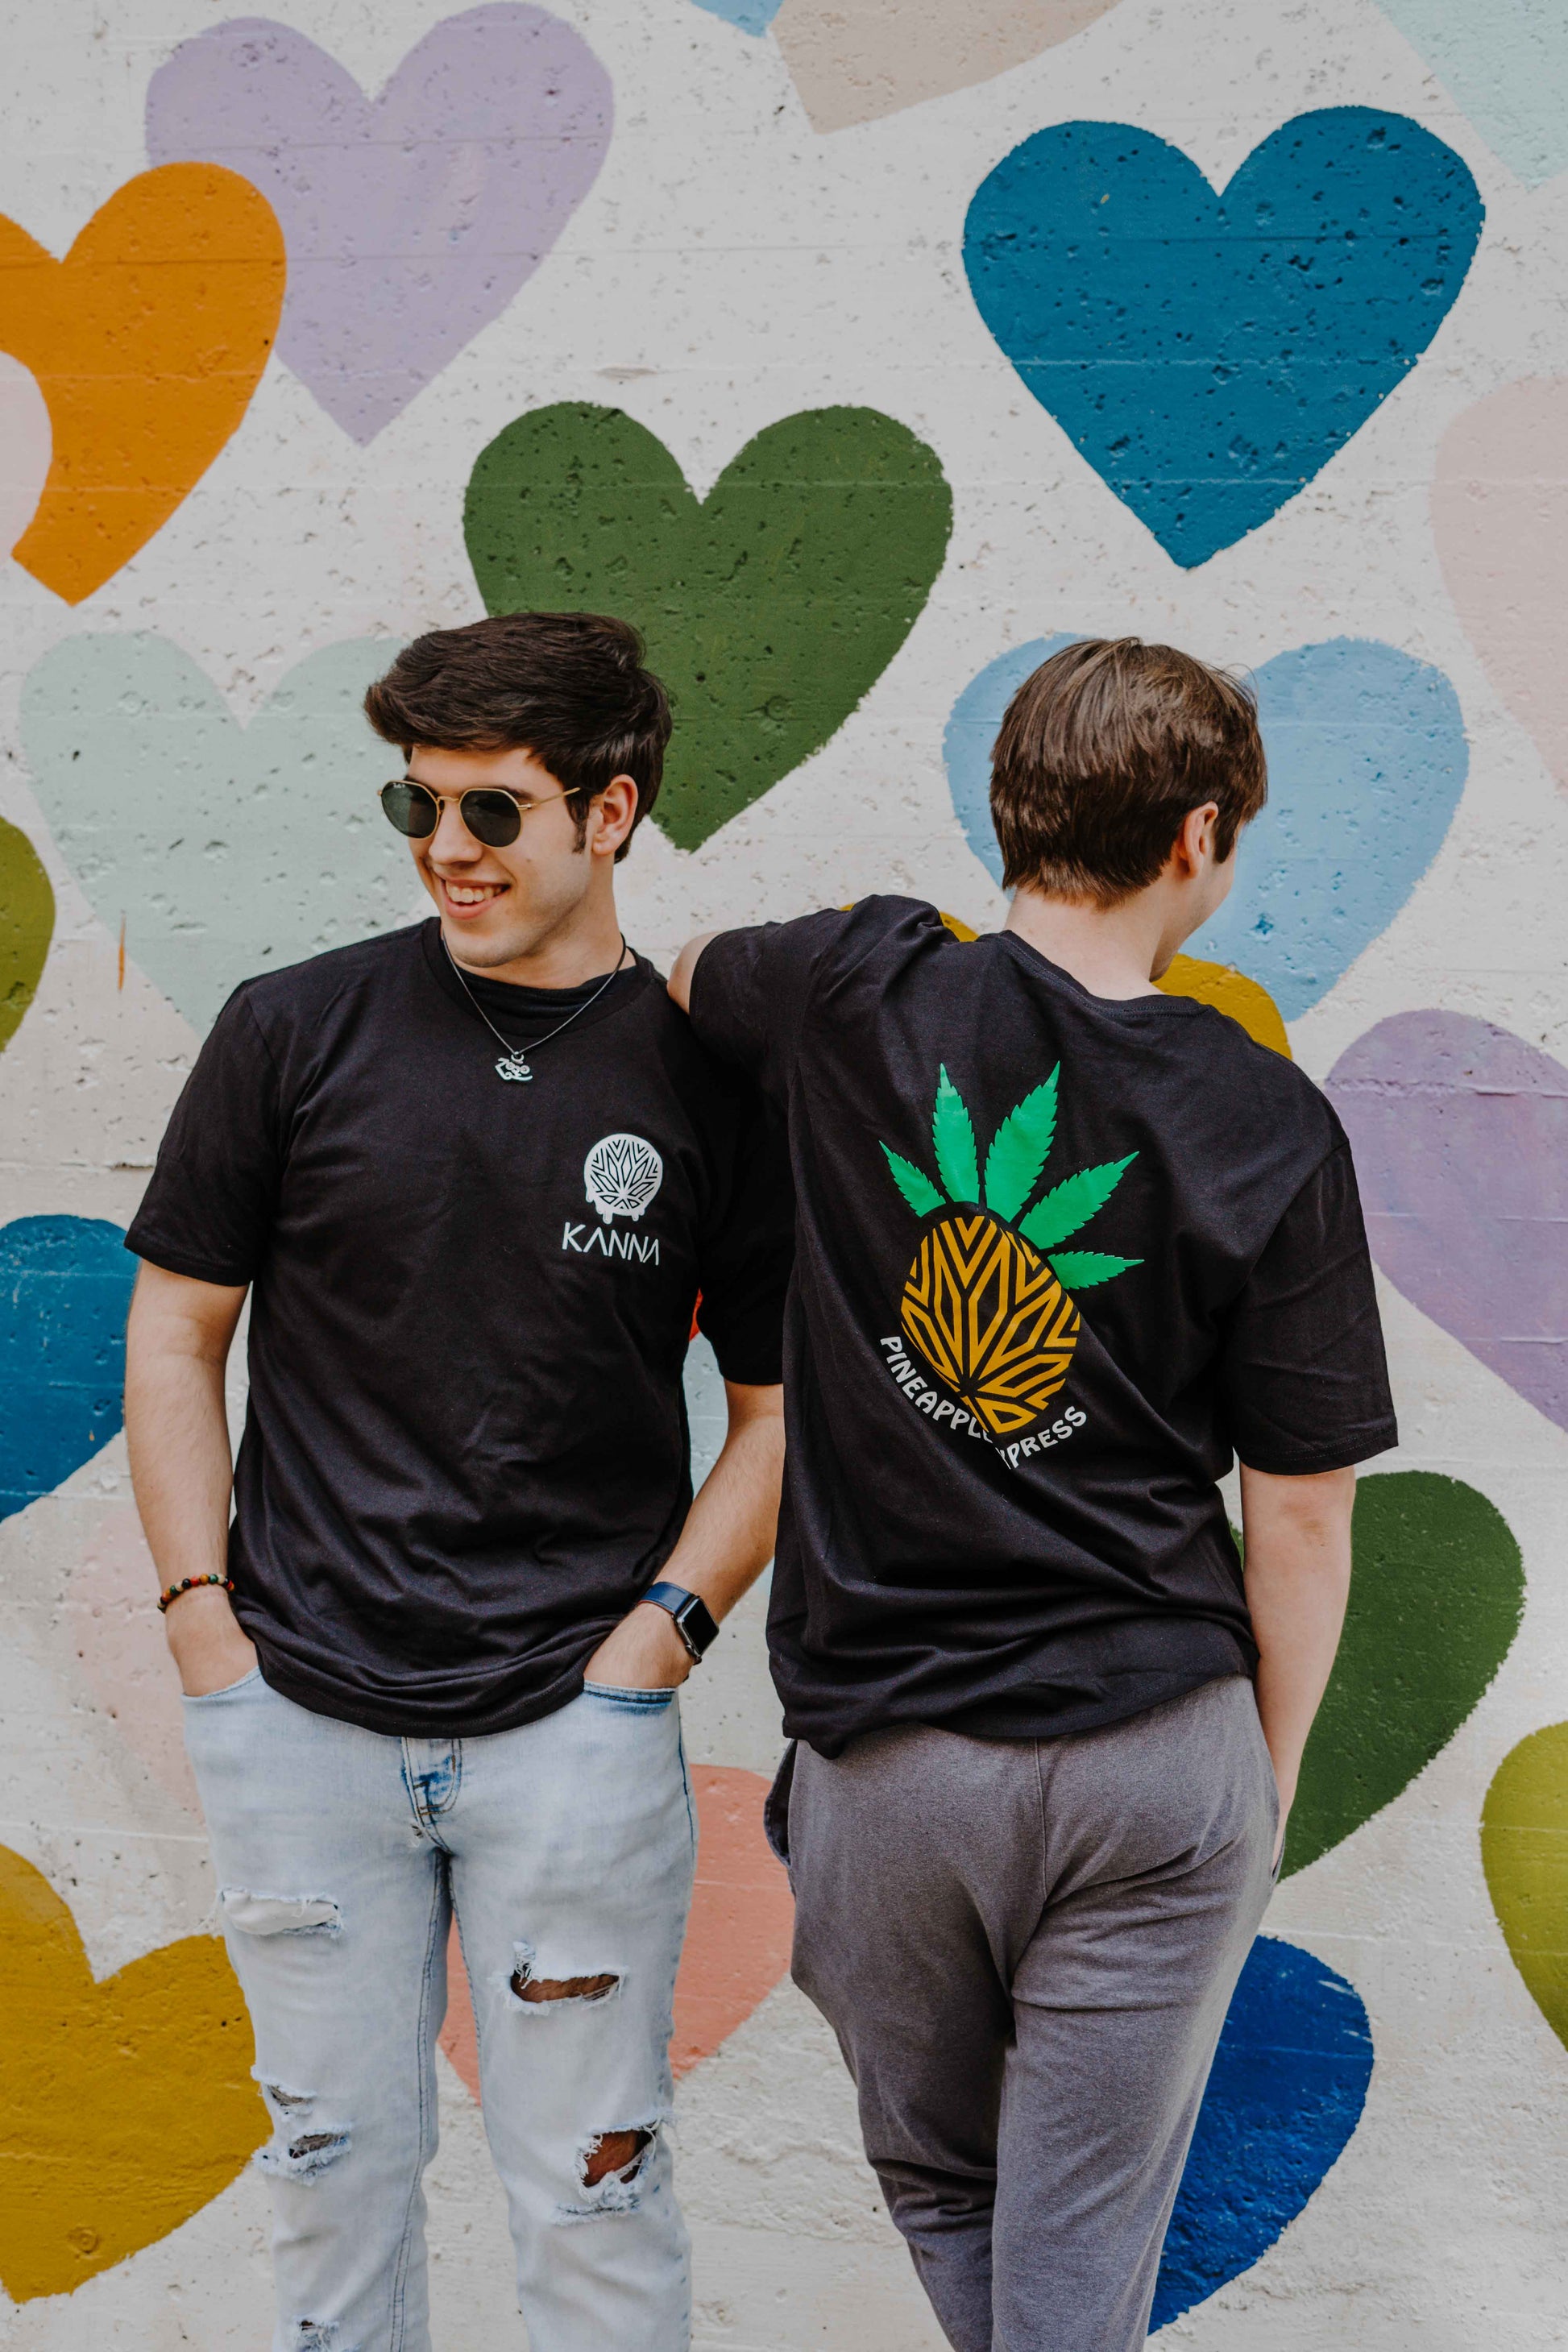 Pineapple Express T-Shirt - KANNA